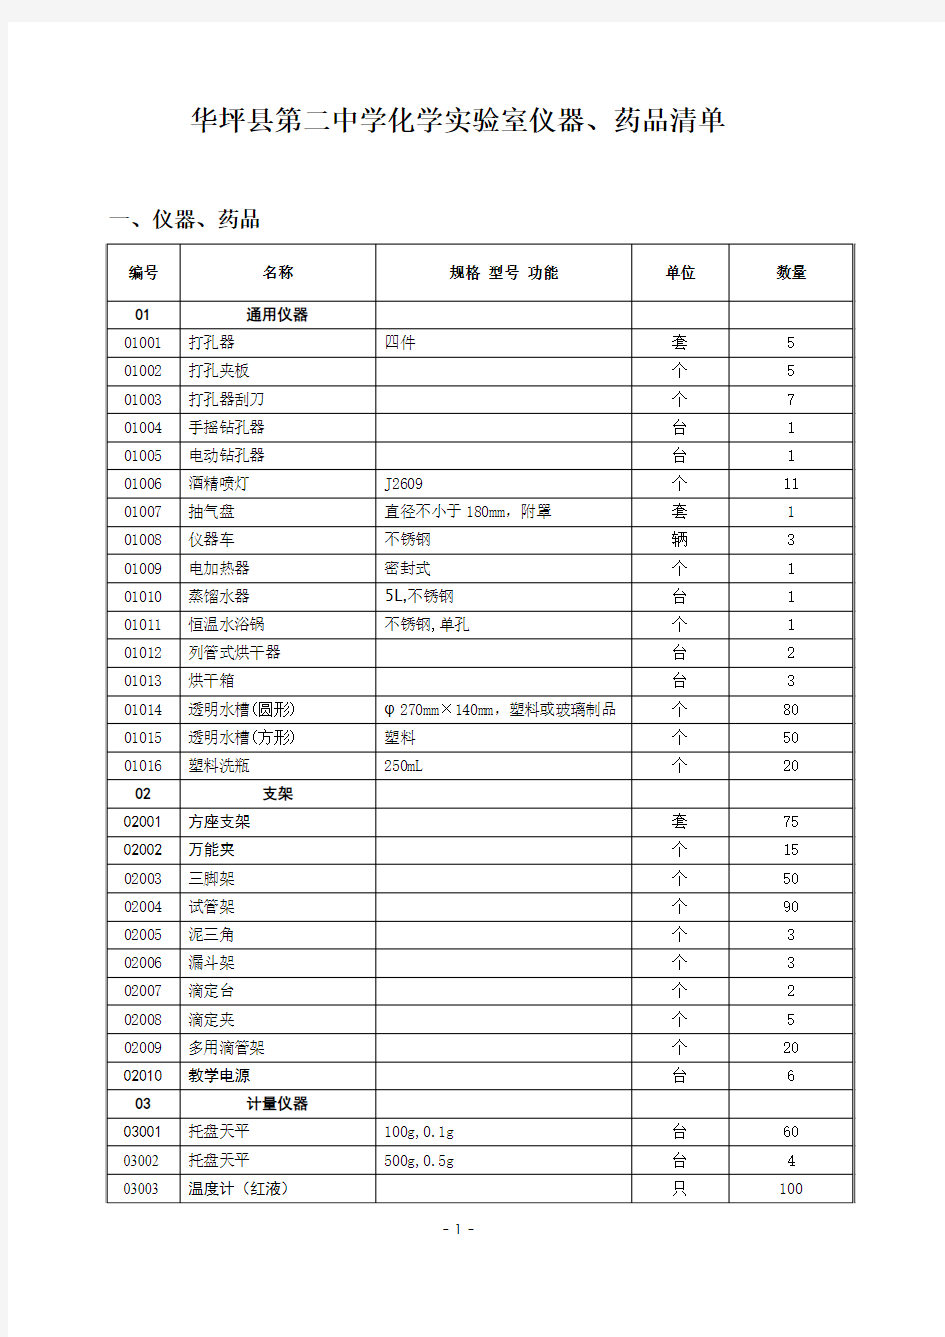 华坪县第二中学化学实验室仪器药品清单2015.9